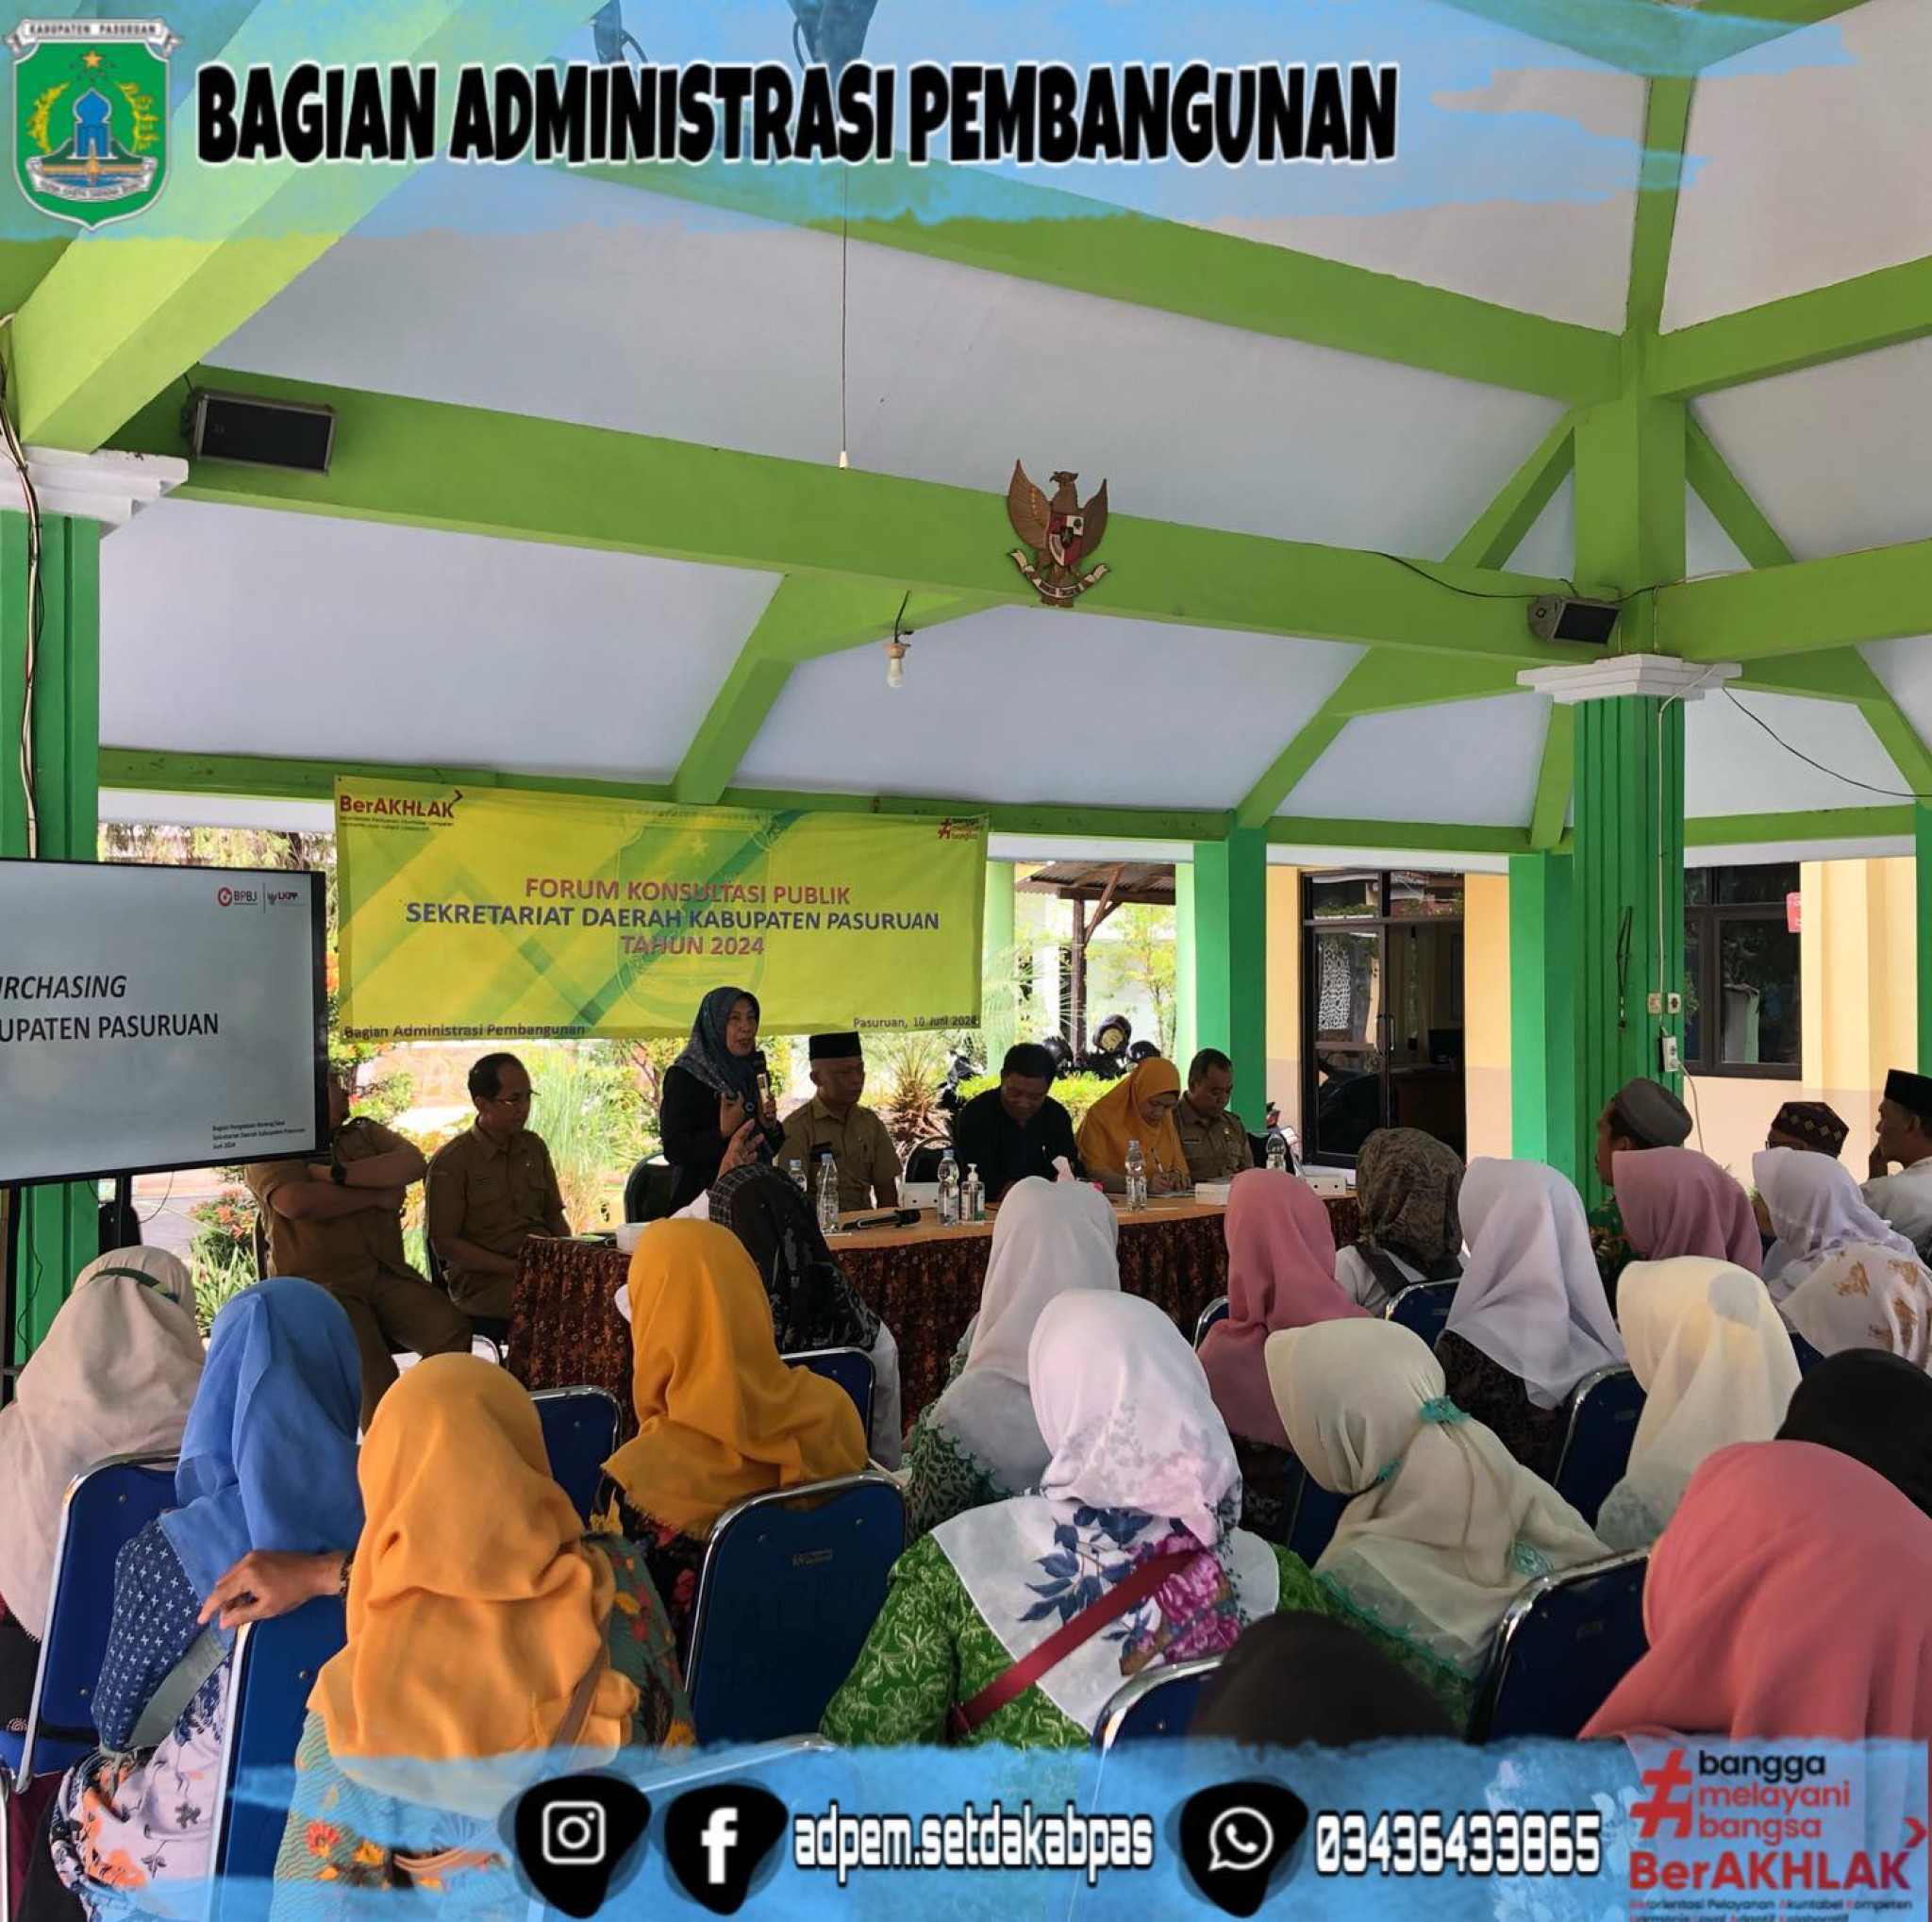 Forum Konsultasi Publik Sekretariat Daerah Kabupaten Pasuruan Tahun 2024 Kecamatan Pohjentrek